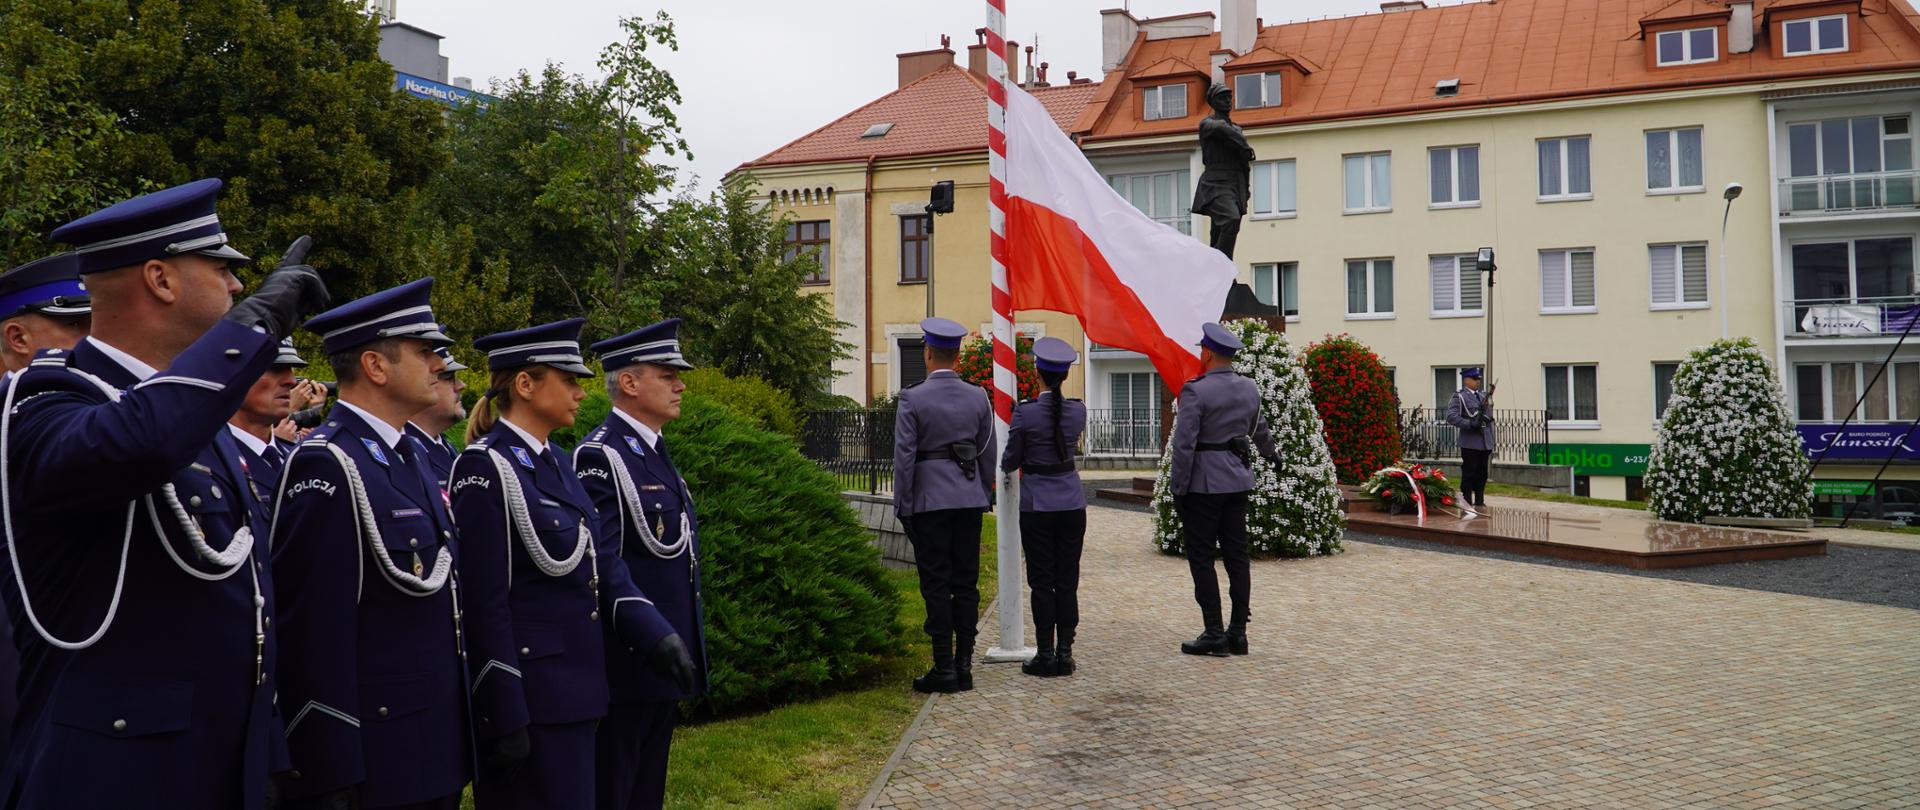 Podniesienie flagi państwowej na maszt podczas wojewódzkich obchodów Święta Policji